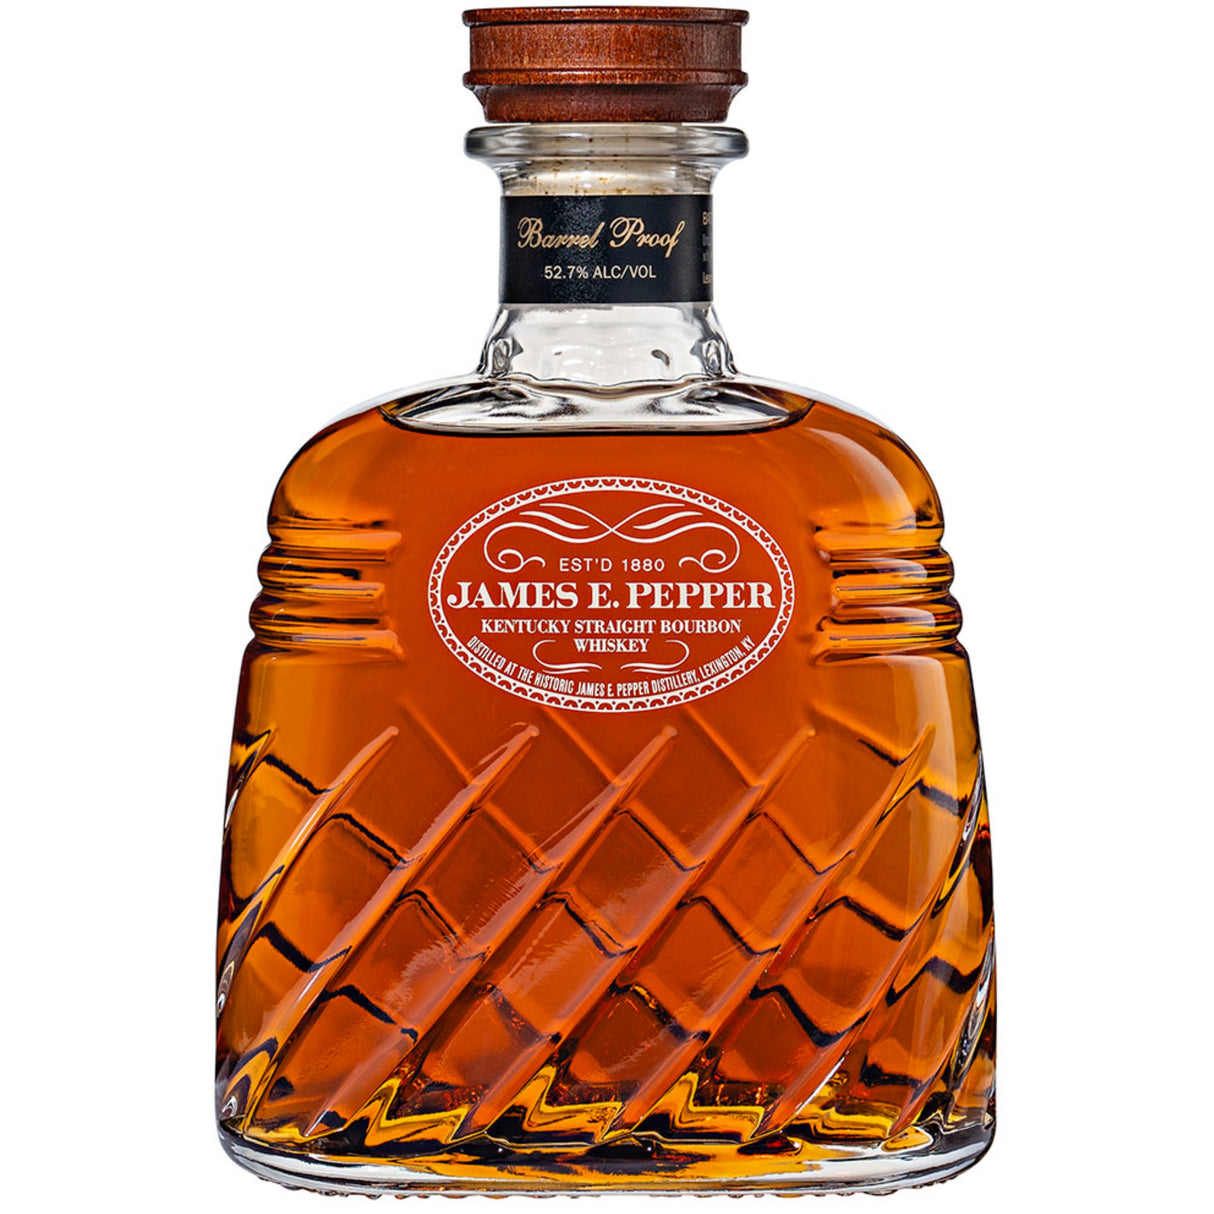 James E. Pepper Decanter Barrel Proof Kentucky Straight Bourbon Whiskey - De Wine Spot | DWS - Drams/Whiskey, Wines, Sake